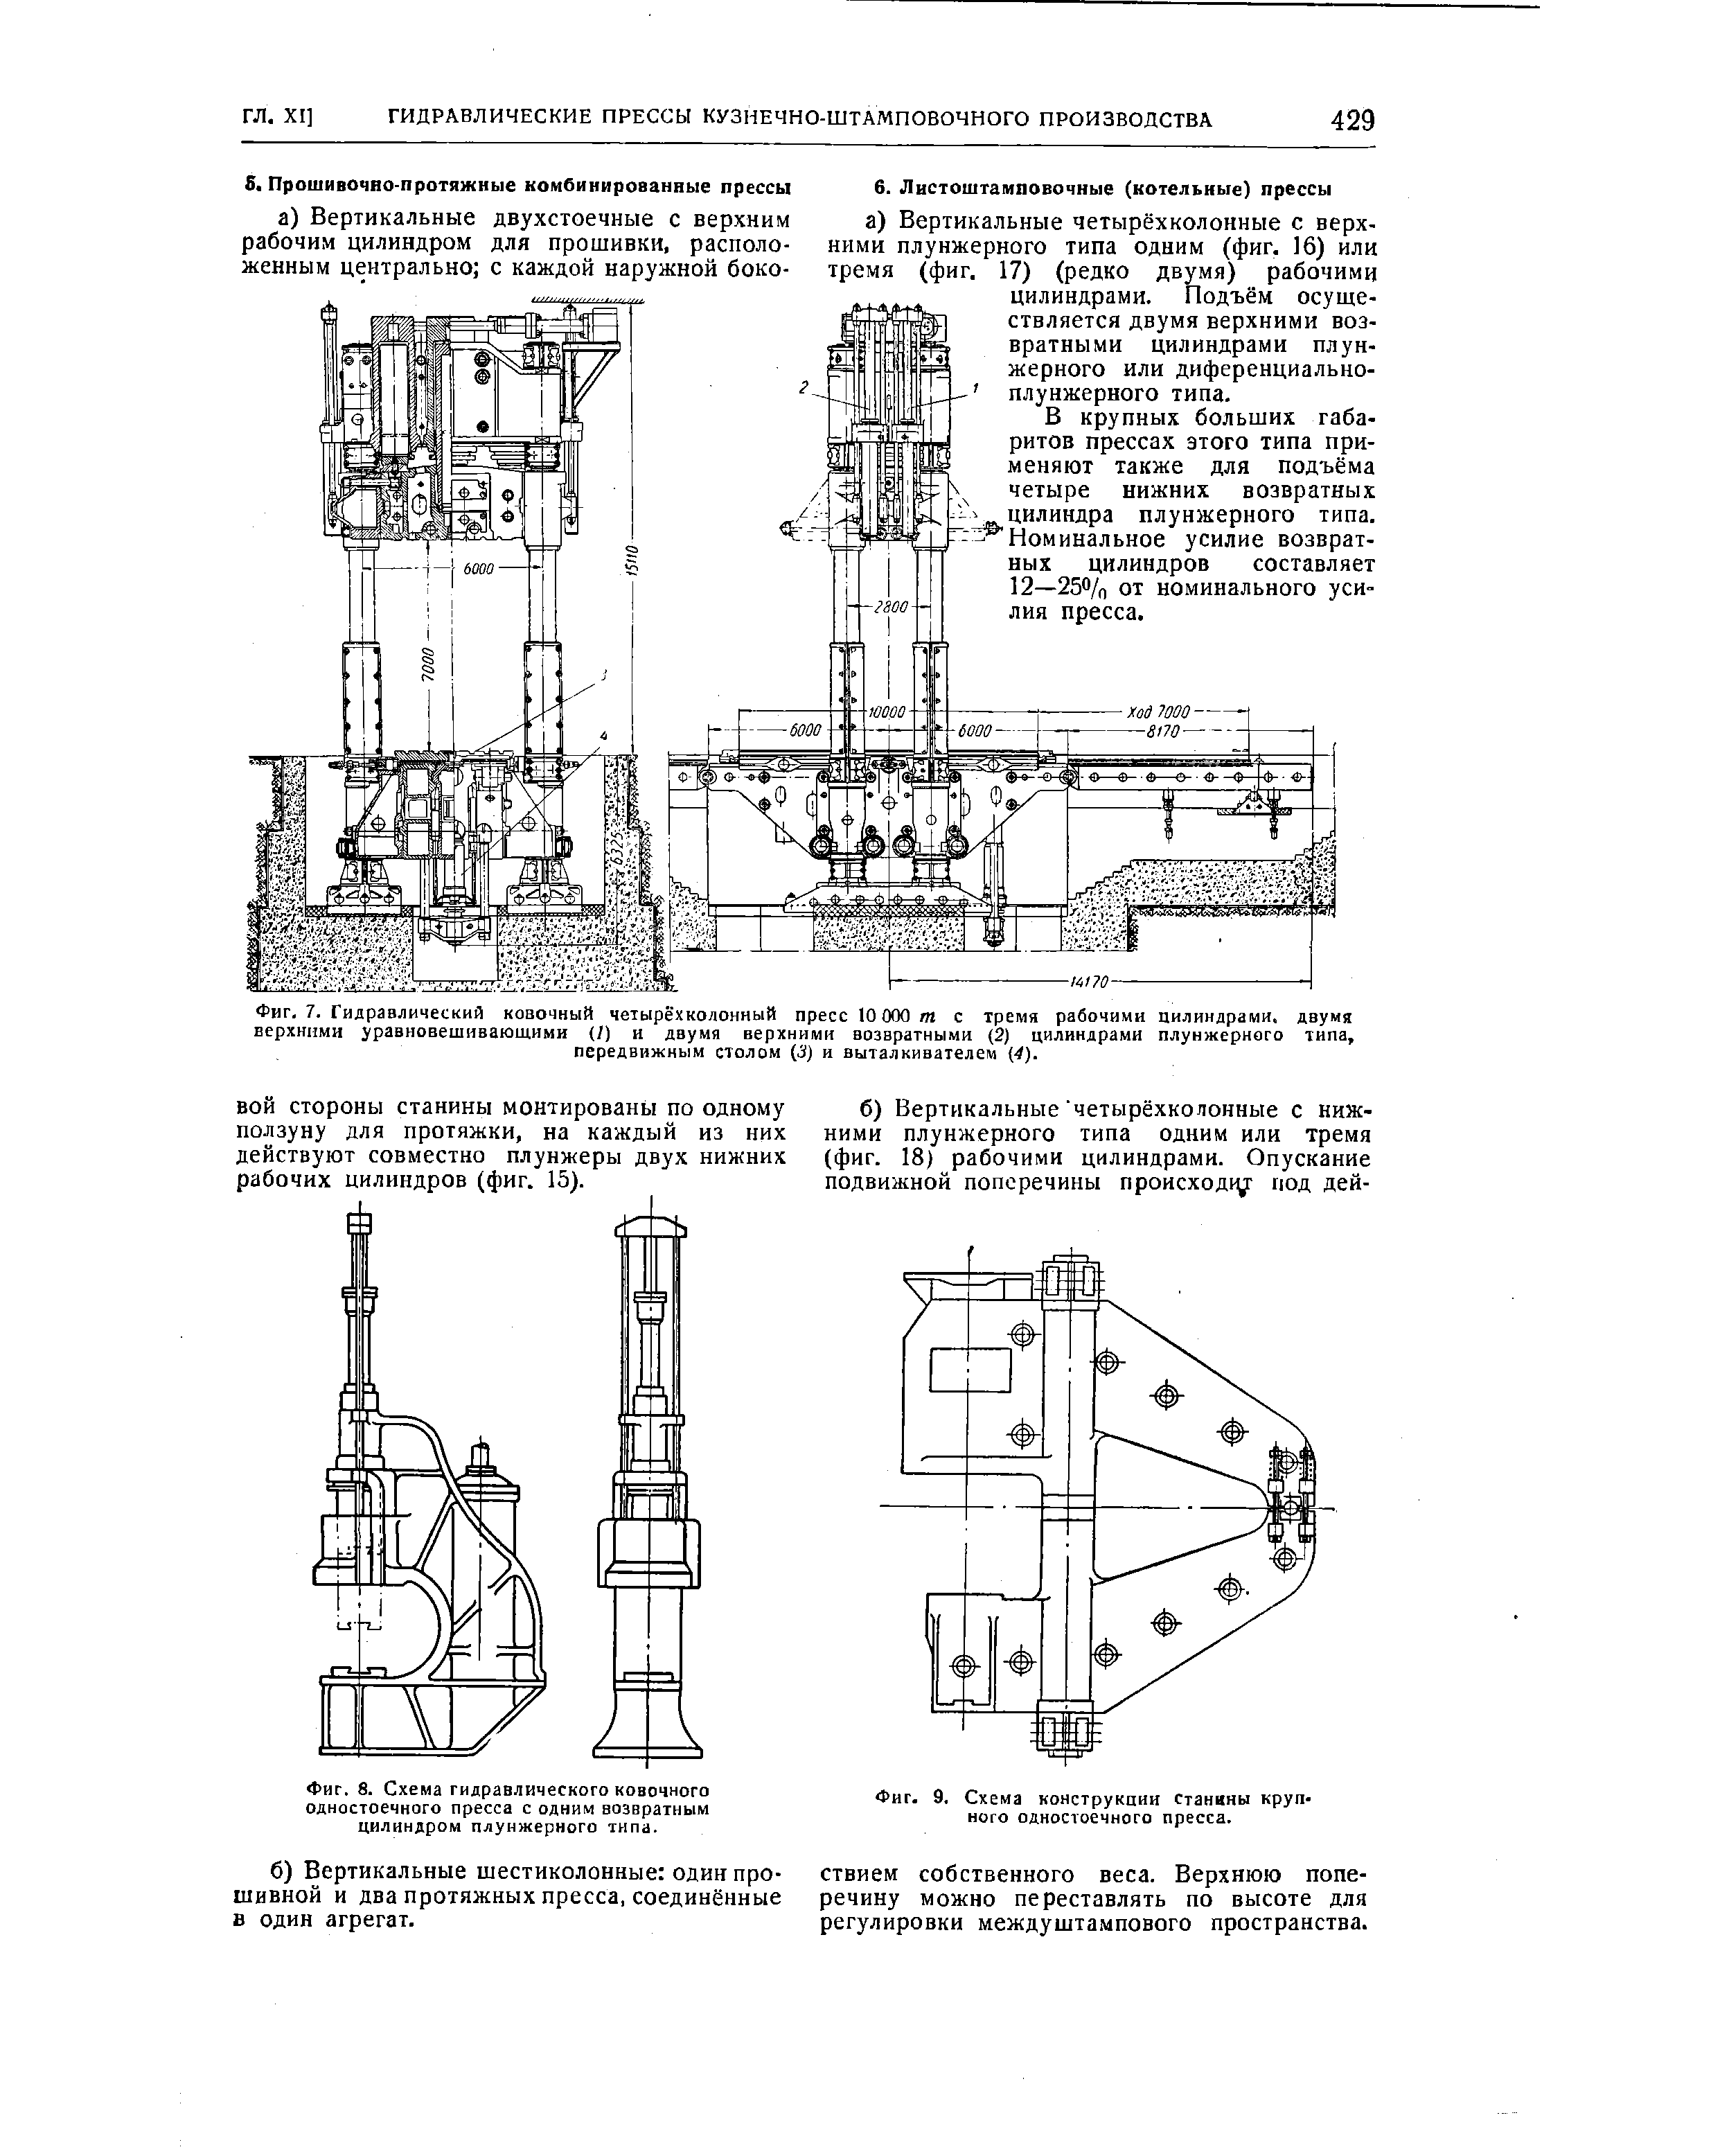 Фиг. 8. Схема гидравлического ковочного одностоечного пресса с одним возвратным цилиндром плунжерного типа.
